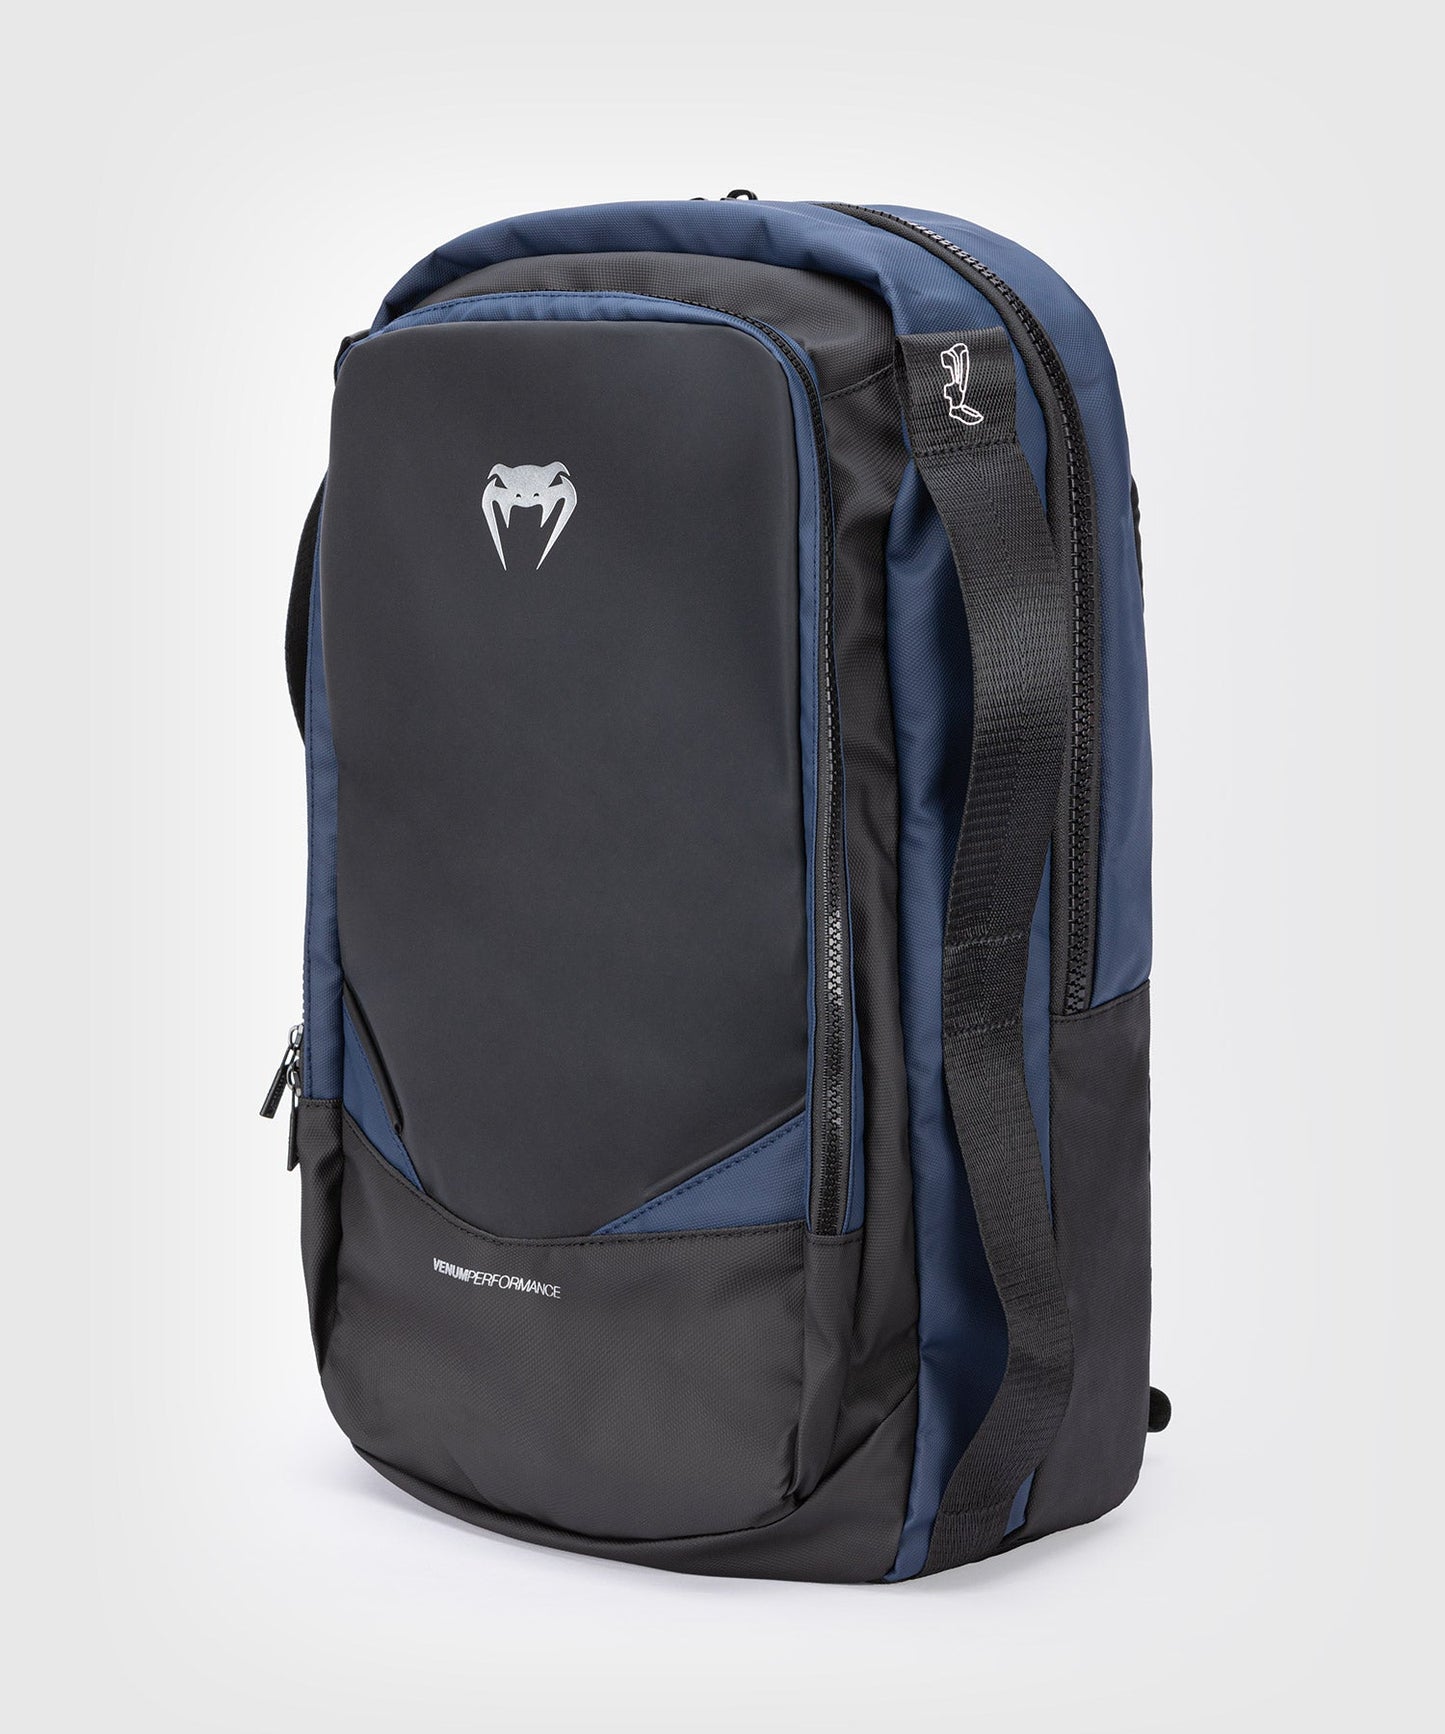 Venum Evo 2 Backpack - Black/Blue